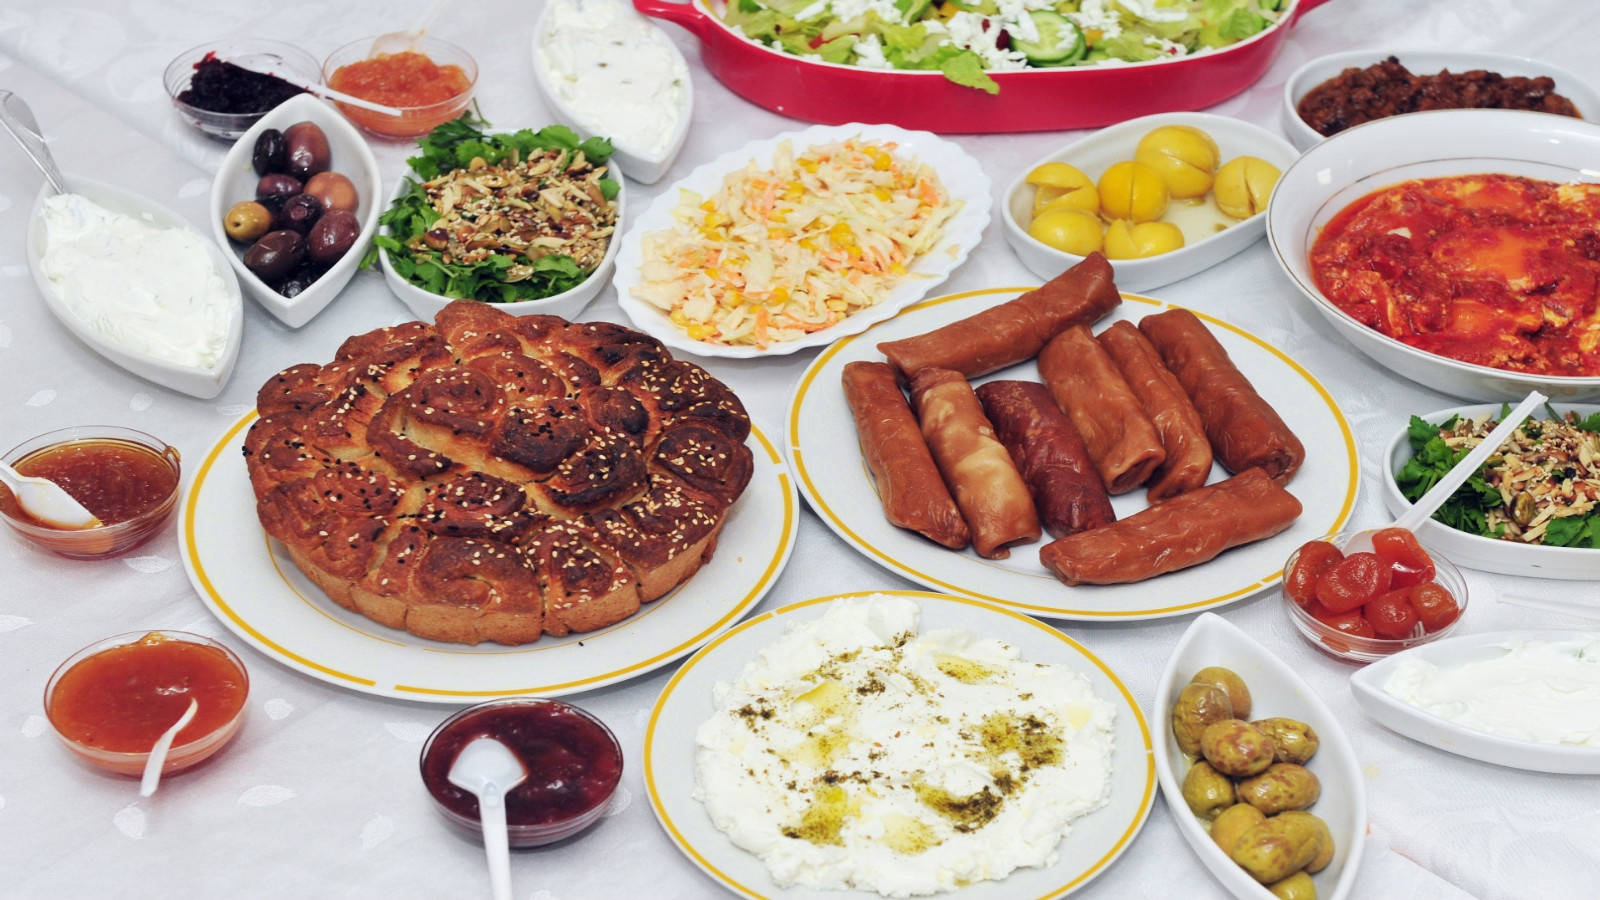 a-sampler-of-israeli-cuisine_-image-via-shutterstock_com.jpg